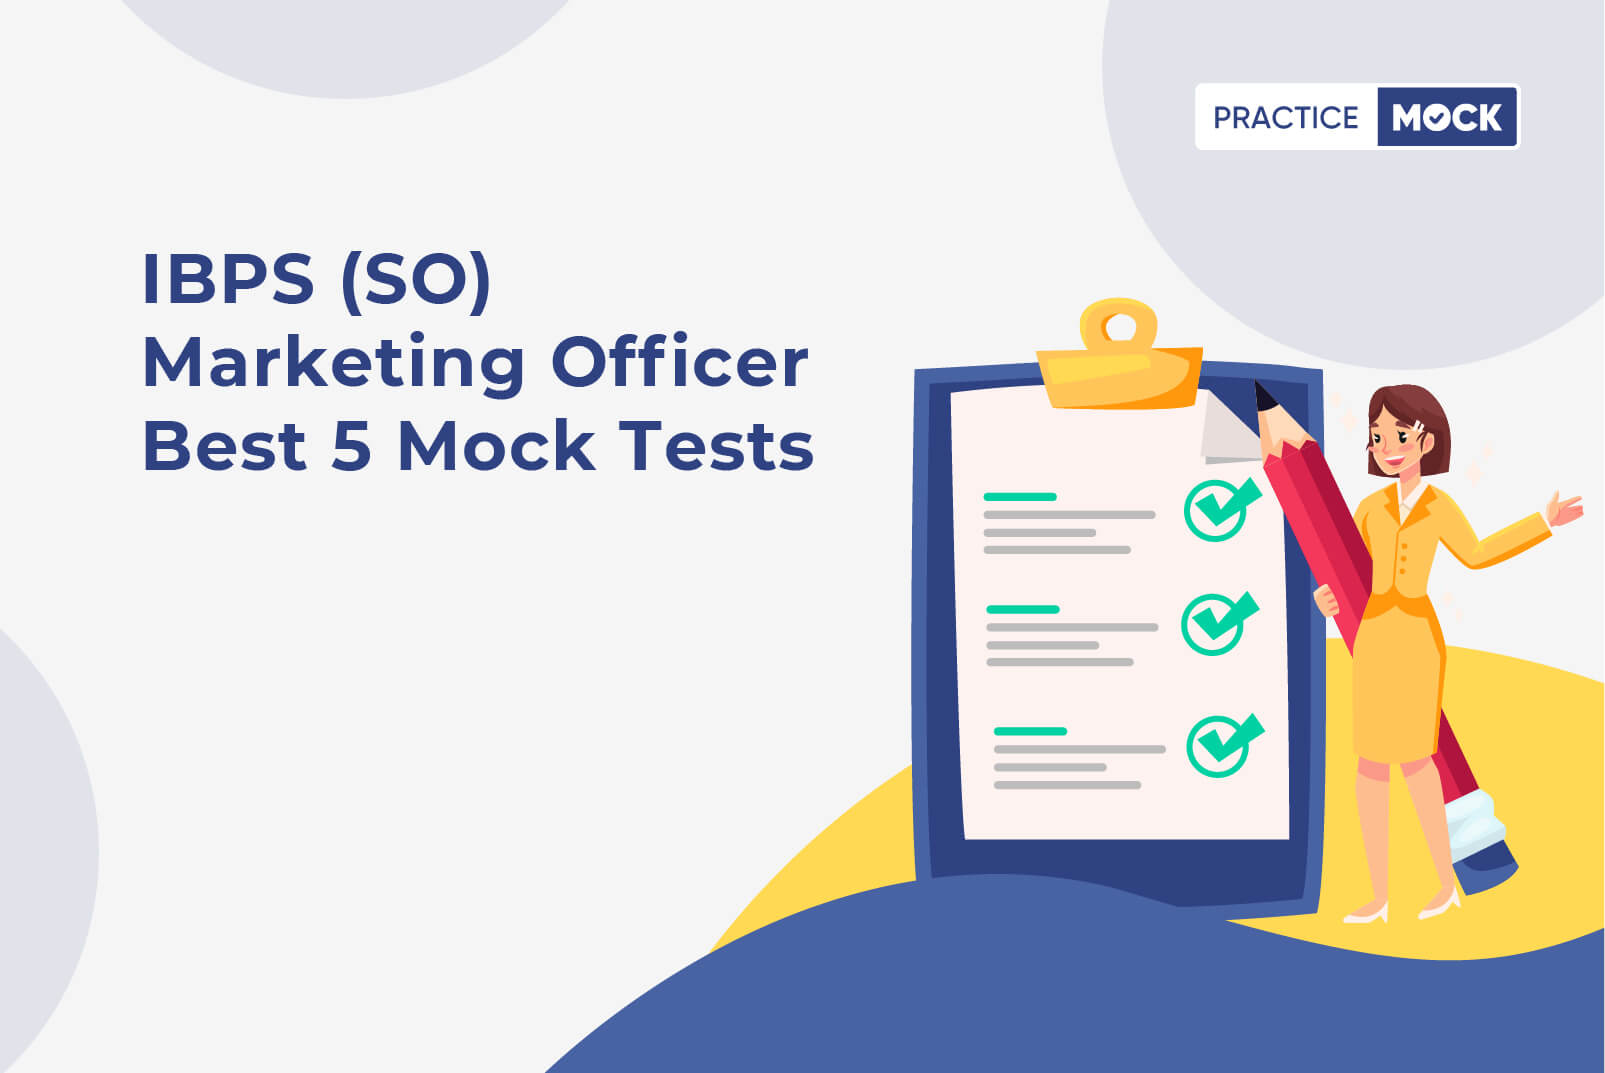 IBPS (SO) Marketing Officer Best 5 Mock Tests